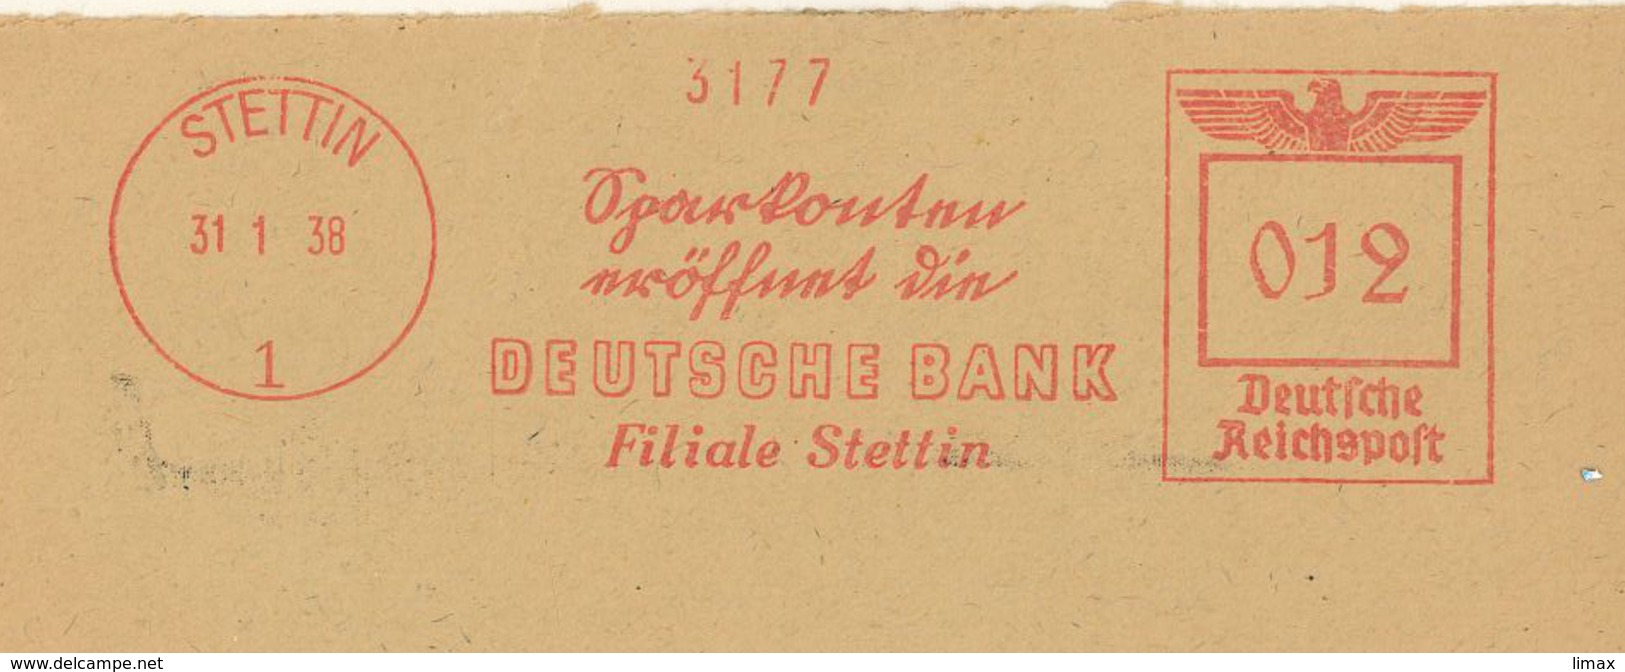 Frankotyp F Stettin Deutsche Bank Filiale - Maschinenstempel (EMA)